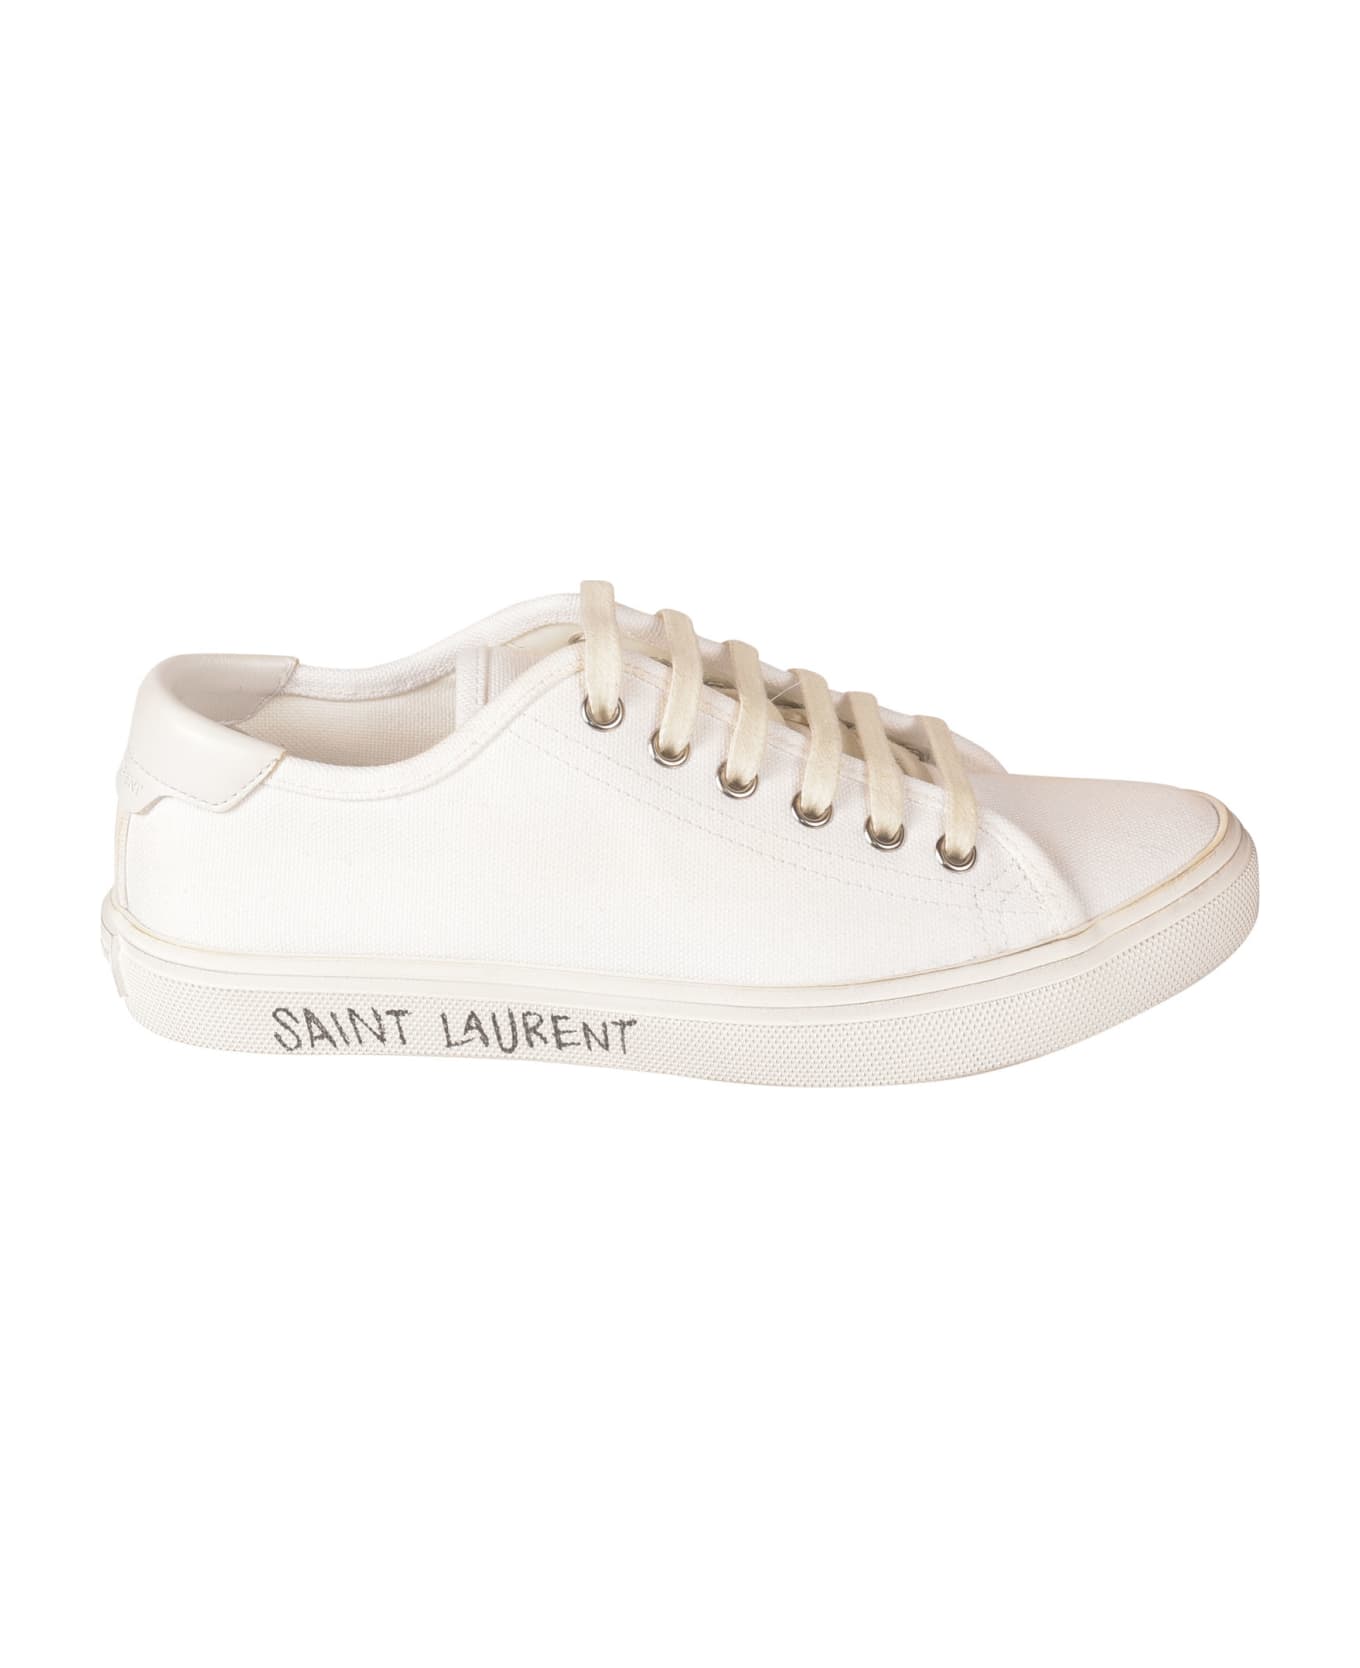 Saint Laurent Side Logo Sneakers - White